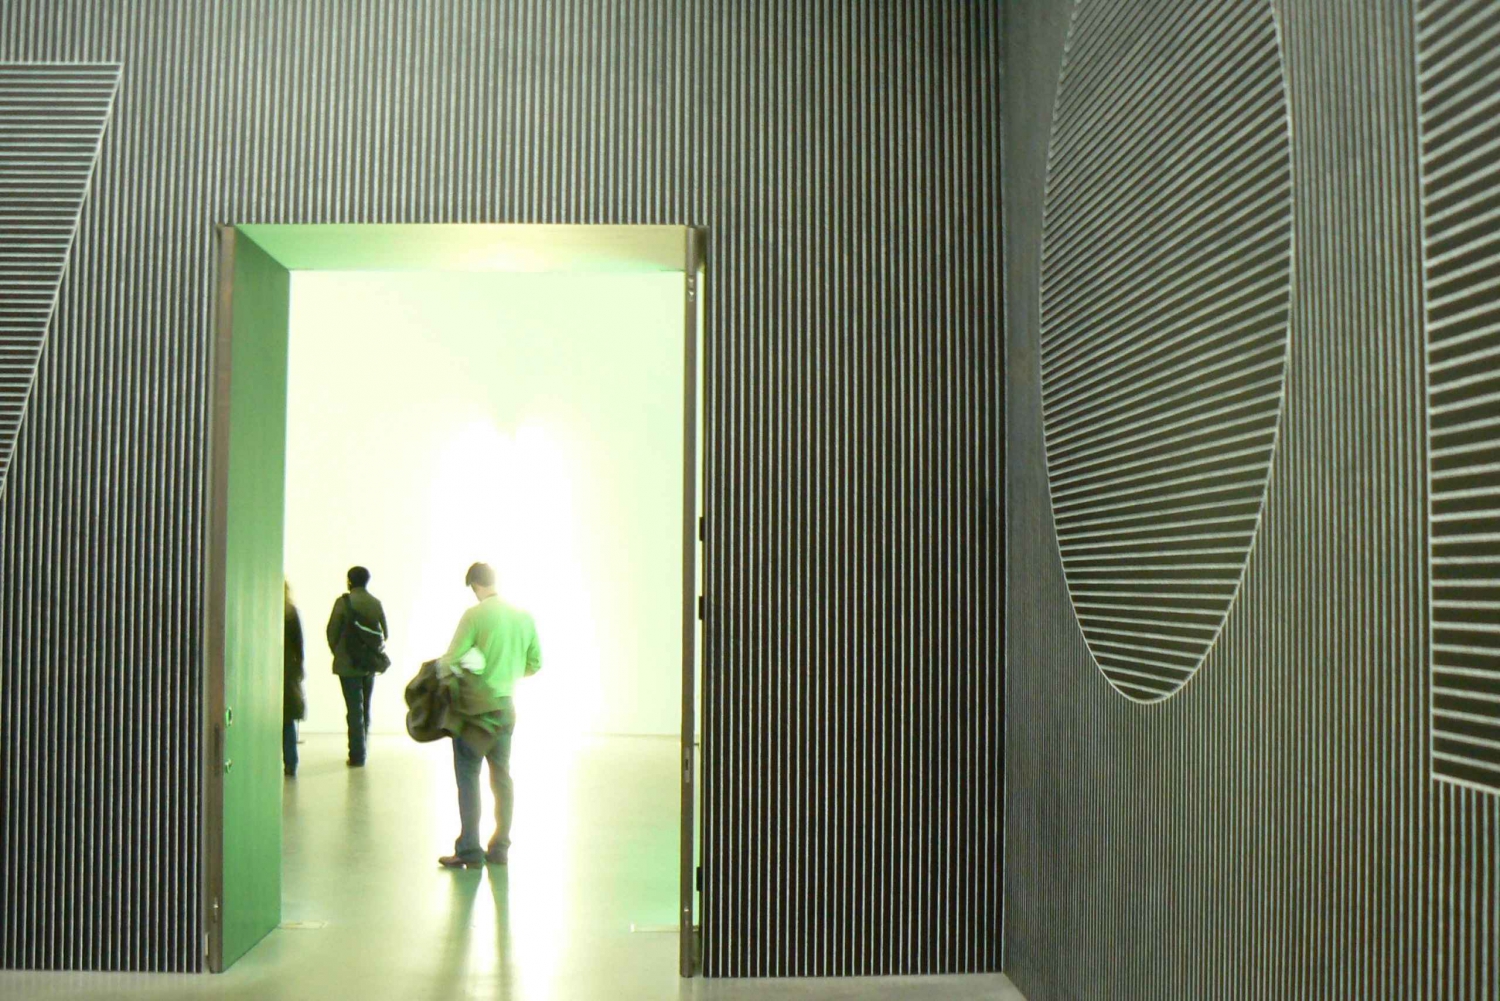 Visita guiada a la Tate Modern